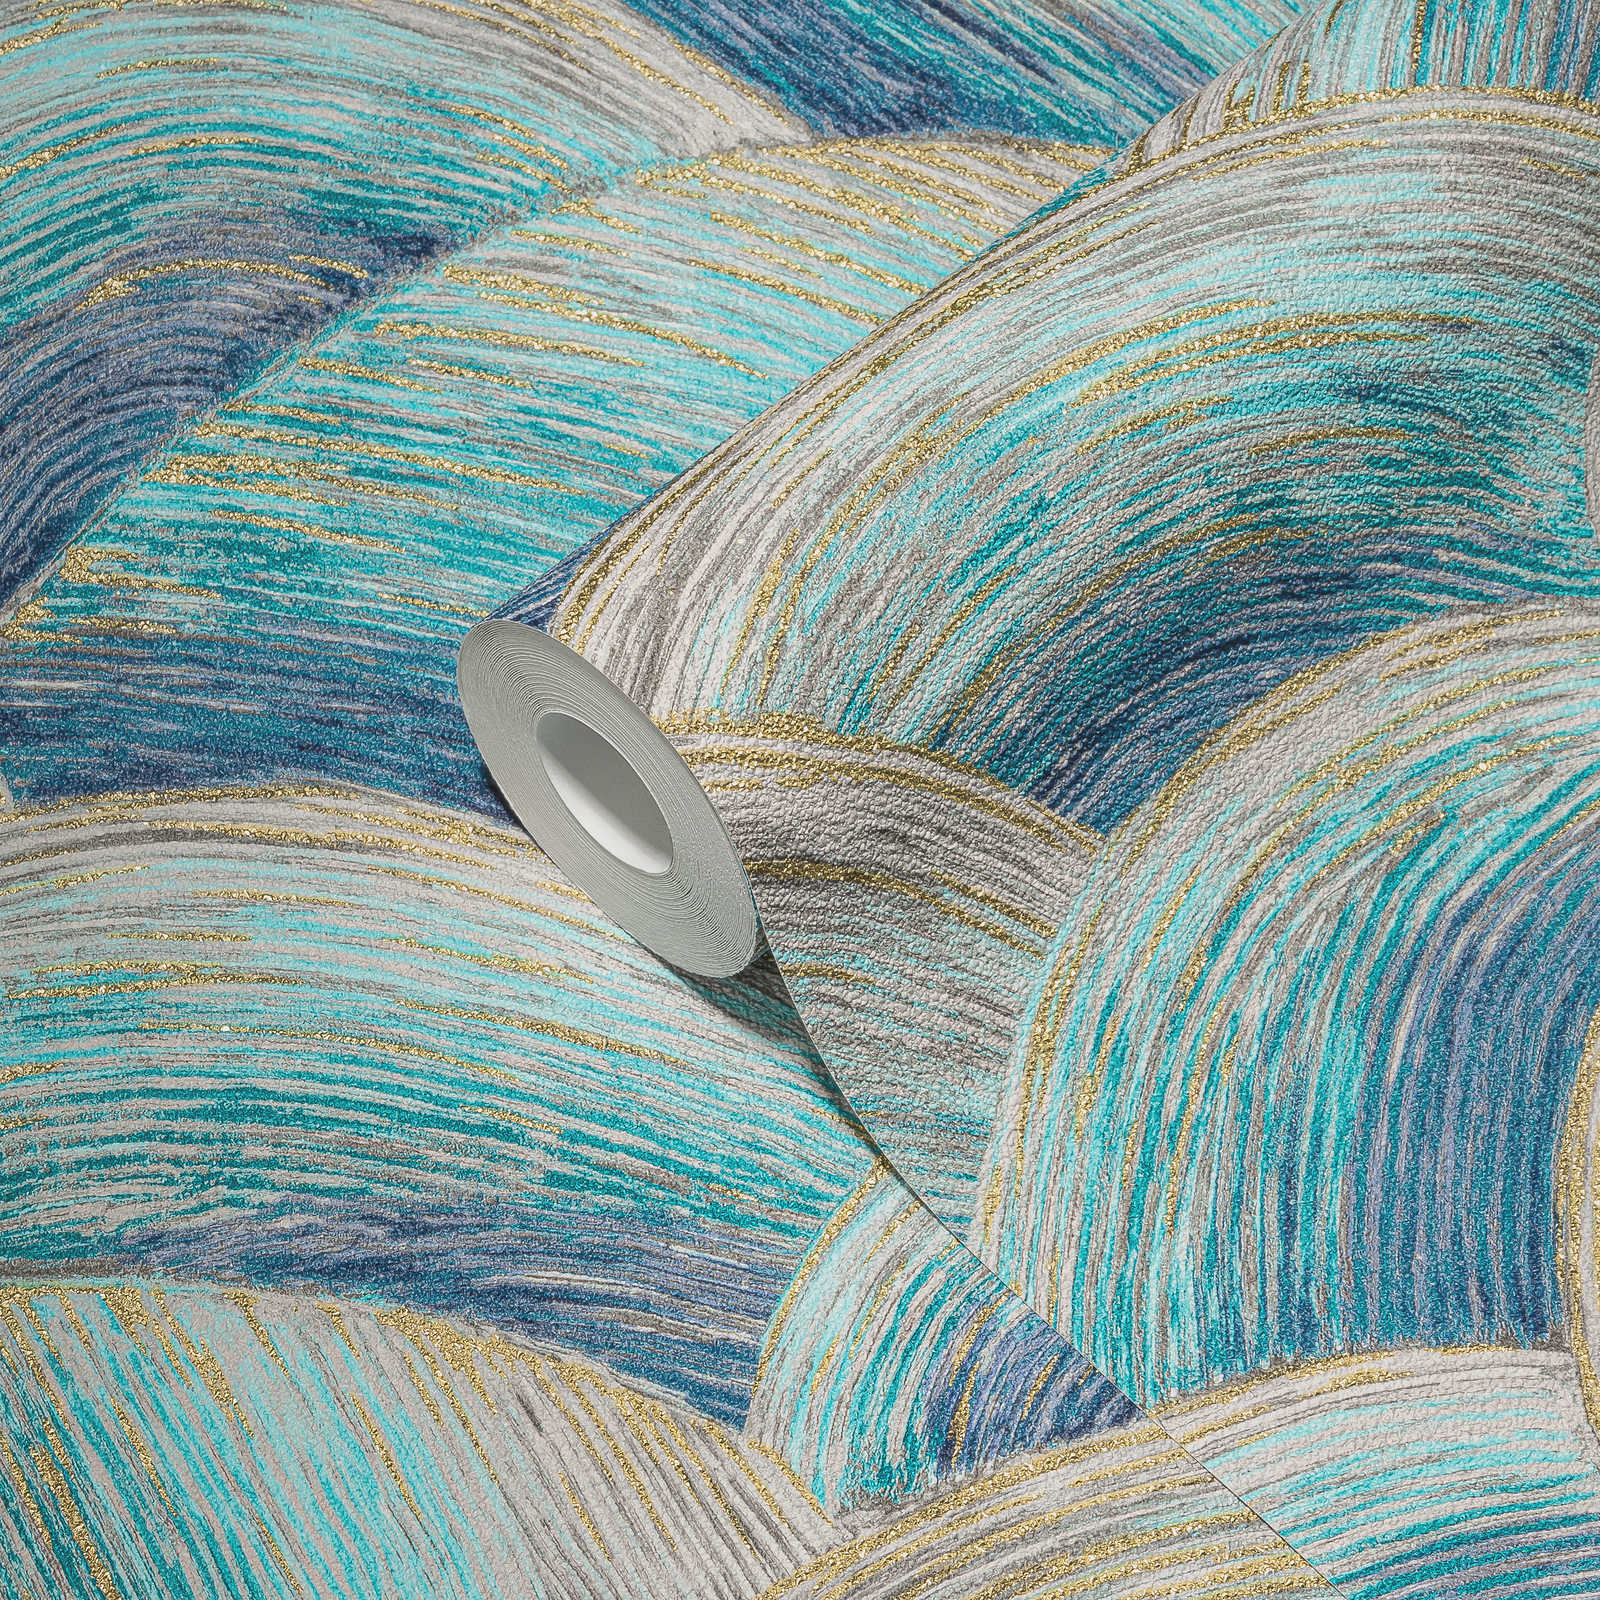             Papel pintado tejido-no tejido abstracto con motivo ondulado y efecto brillante - azul, turquesa, dorado
        